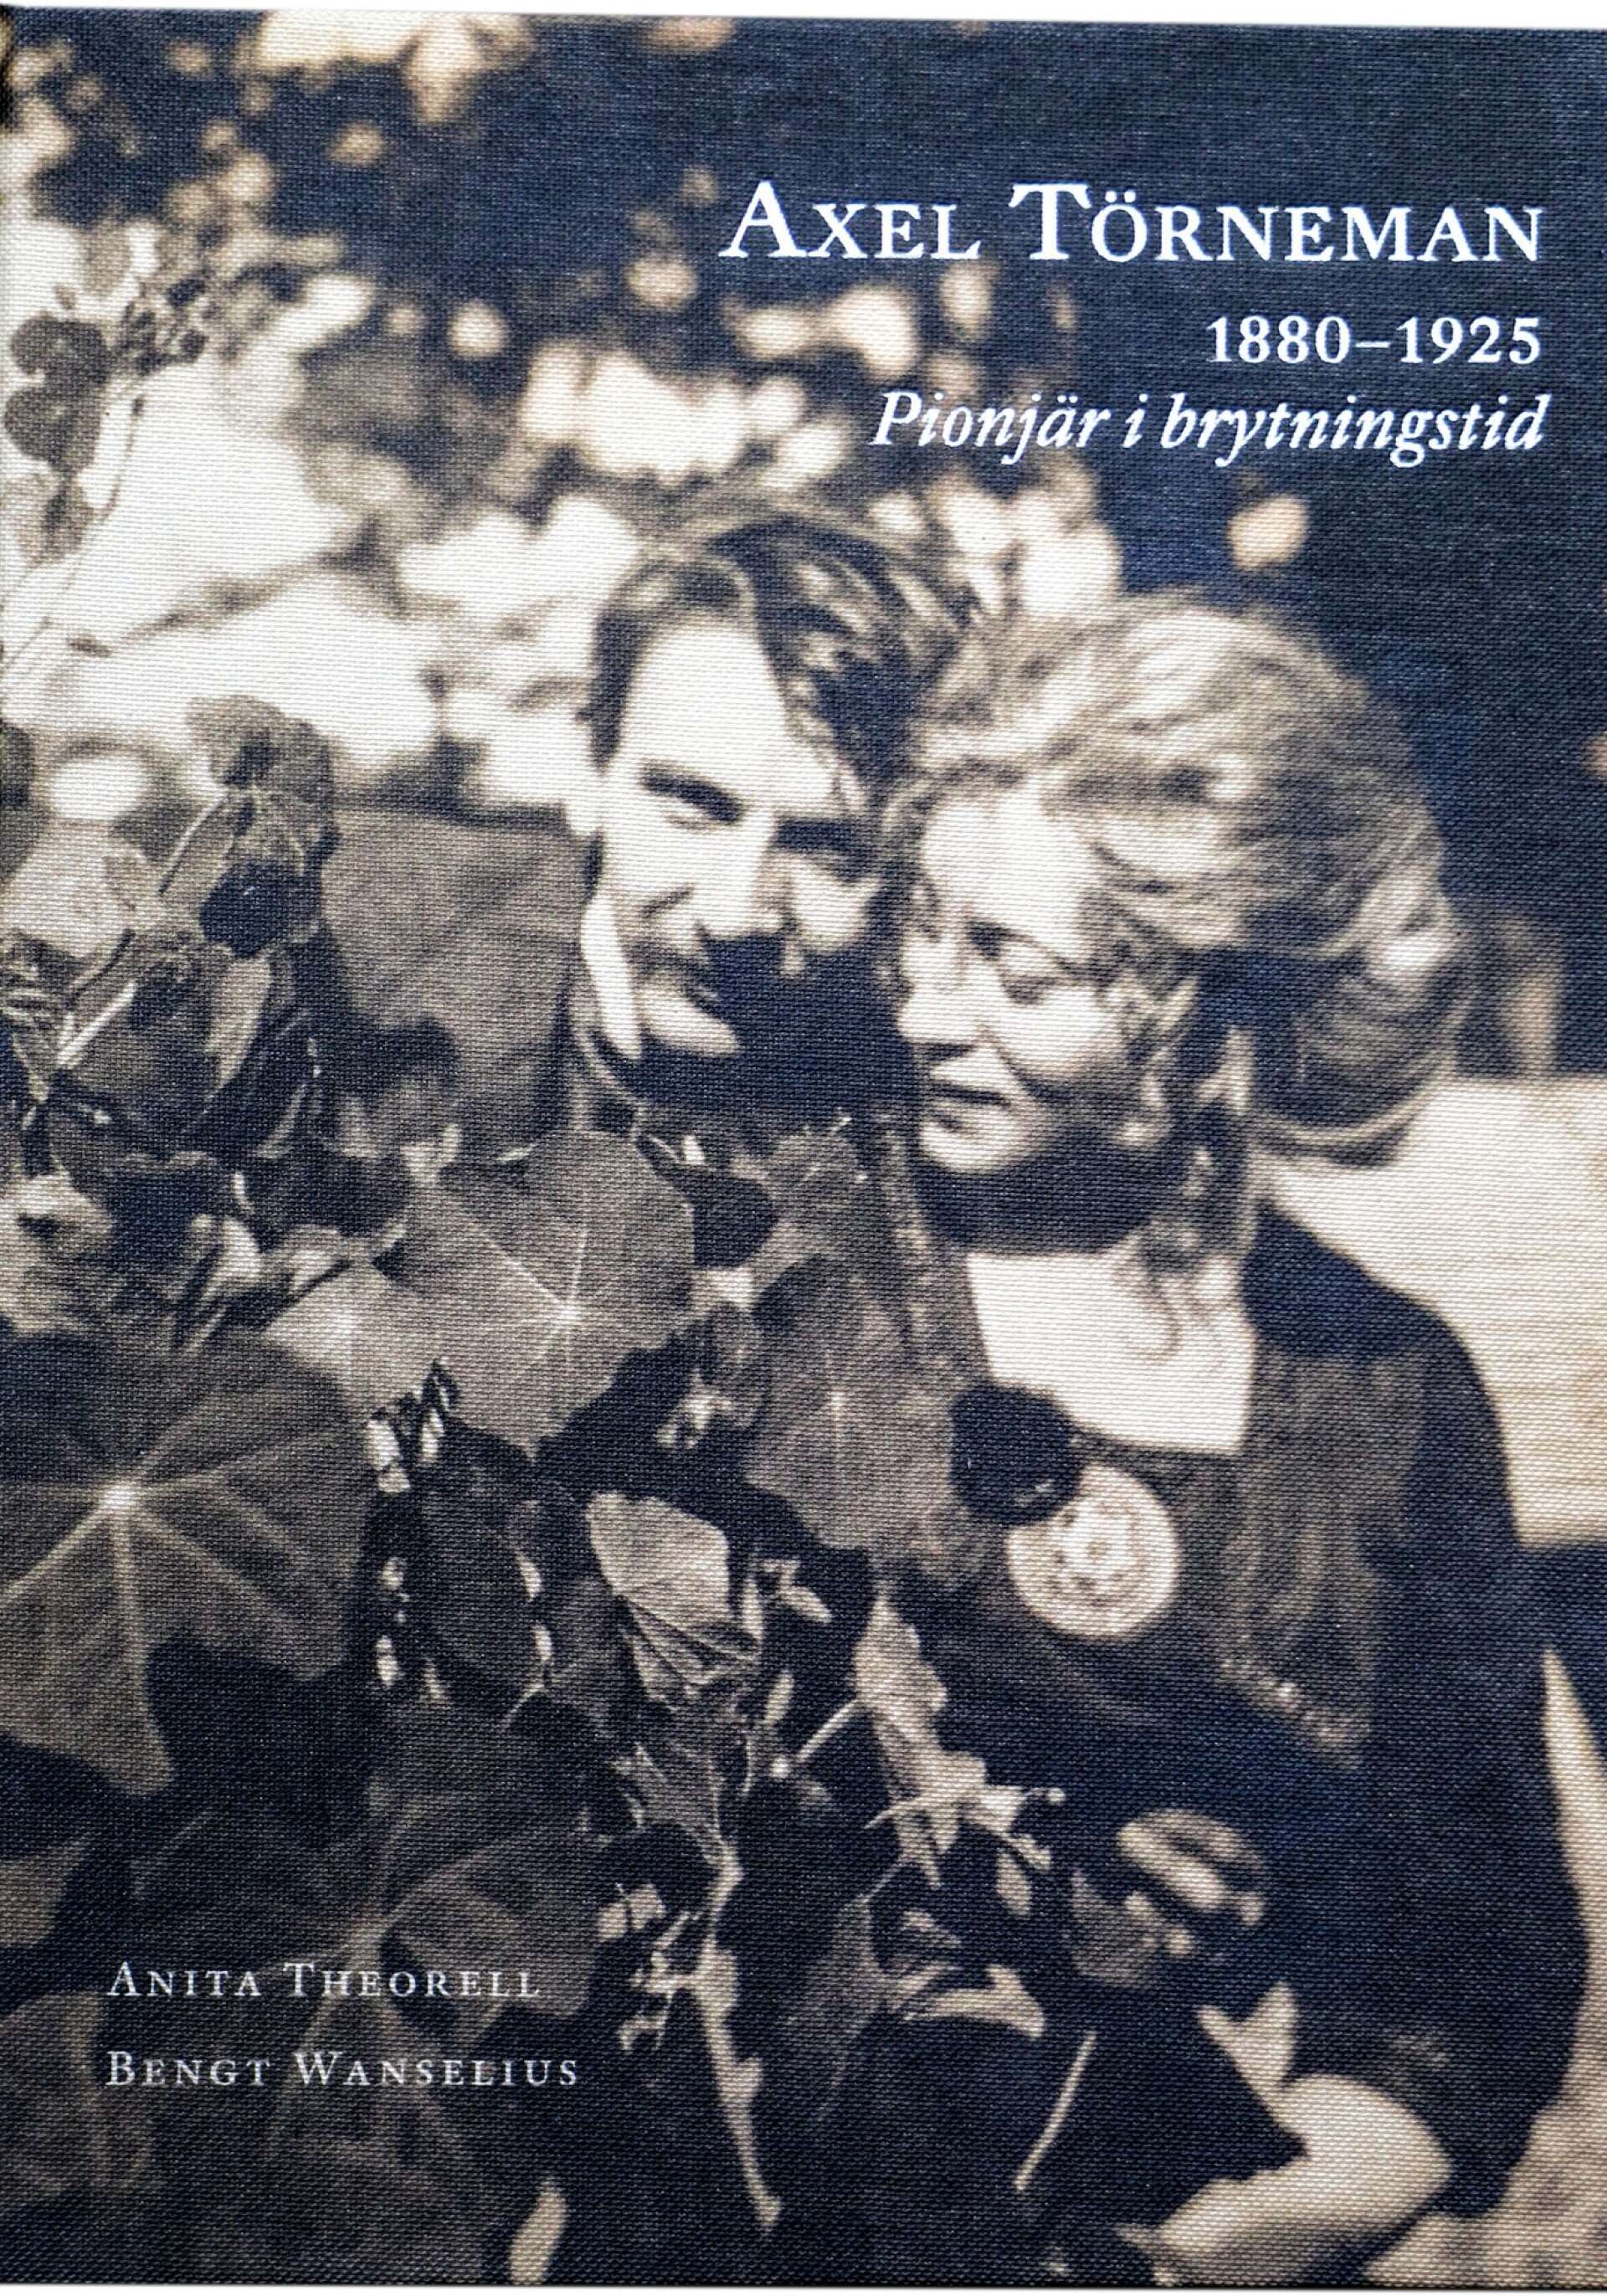 Omslagsbilden visar Axel och hans fru Gudrun. Bildmaterialet är framtagen i samarbete med Bengt Wanseeius. Boken ges ut av bokförlaget Stolpe.